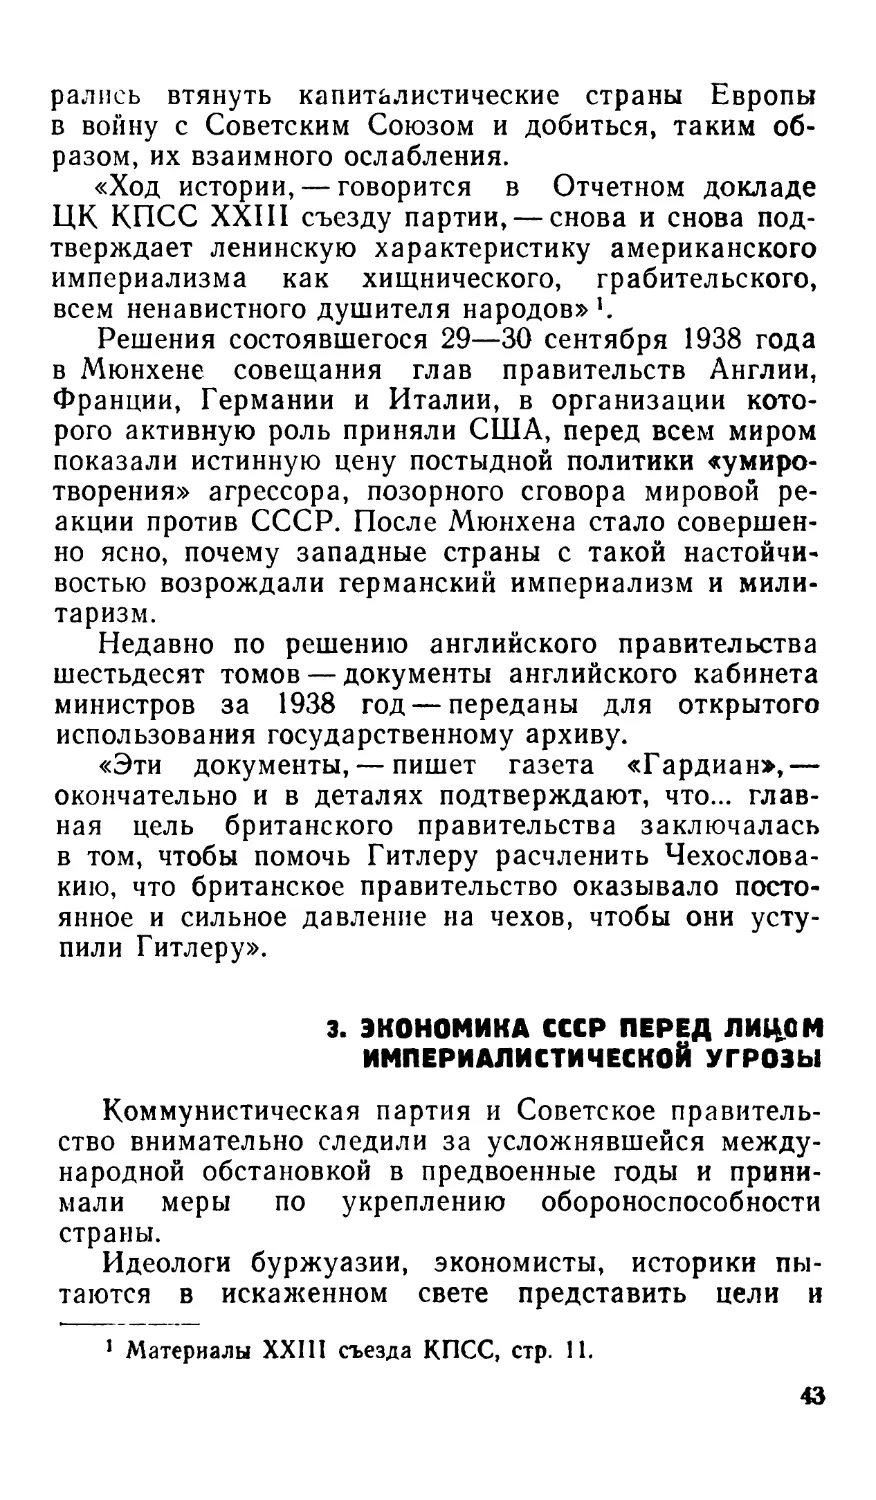 3. Экономика СССР перед лицом империалистической угрозы